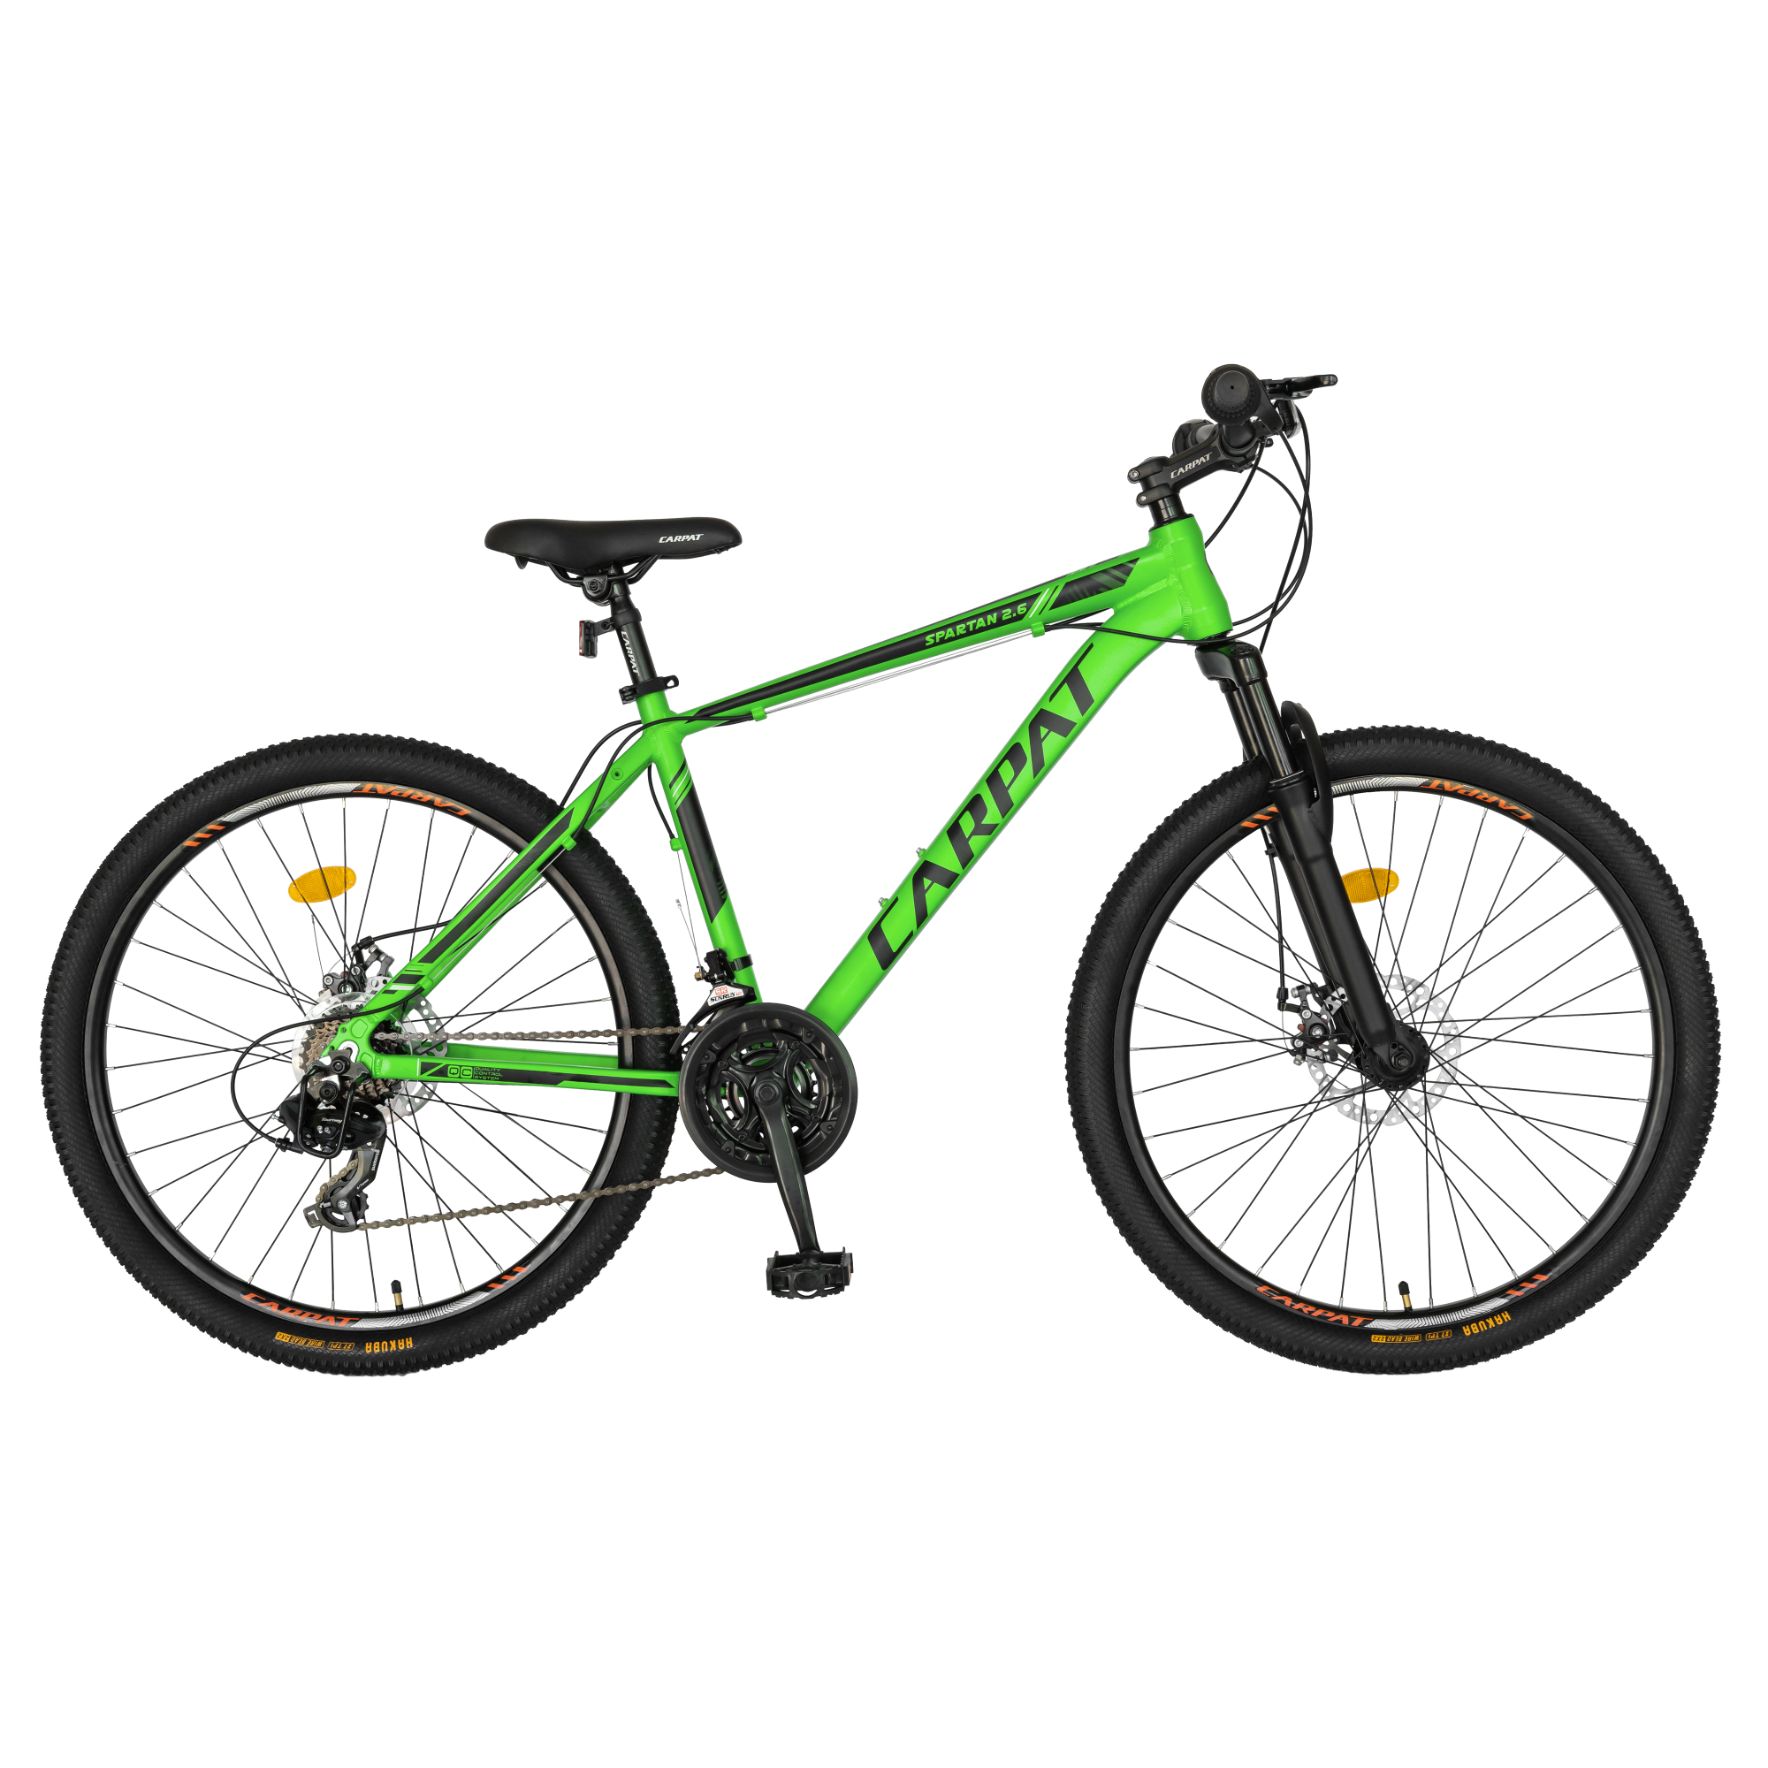 BICICLETE DE MUNTE - Bicicleta MTB-HT, 21 viteze, Roti 27.5 Inch, Cadru Aluminiu 6061, Frane pe Disc, Carpat C2758C, Verde cu Design Negru, carpatsport.ro